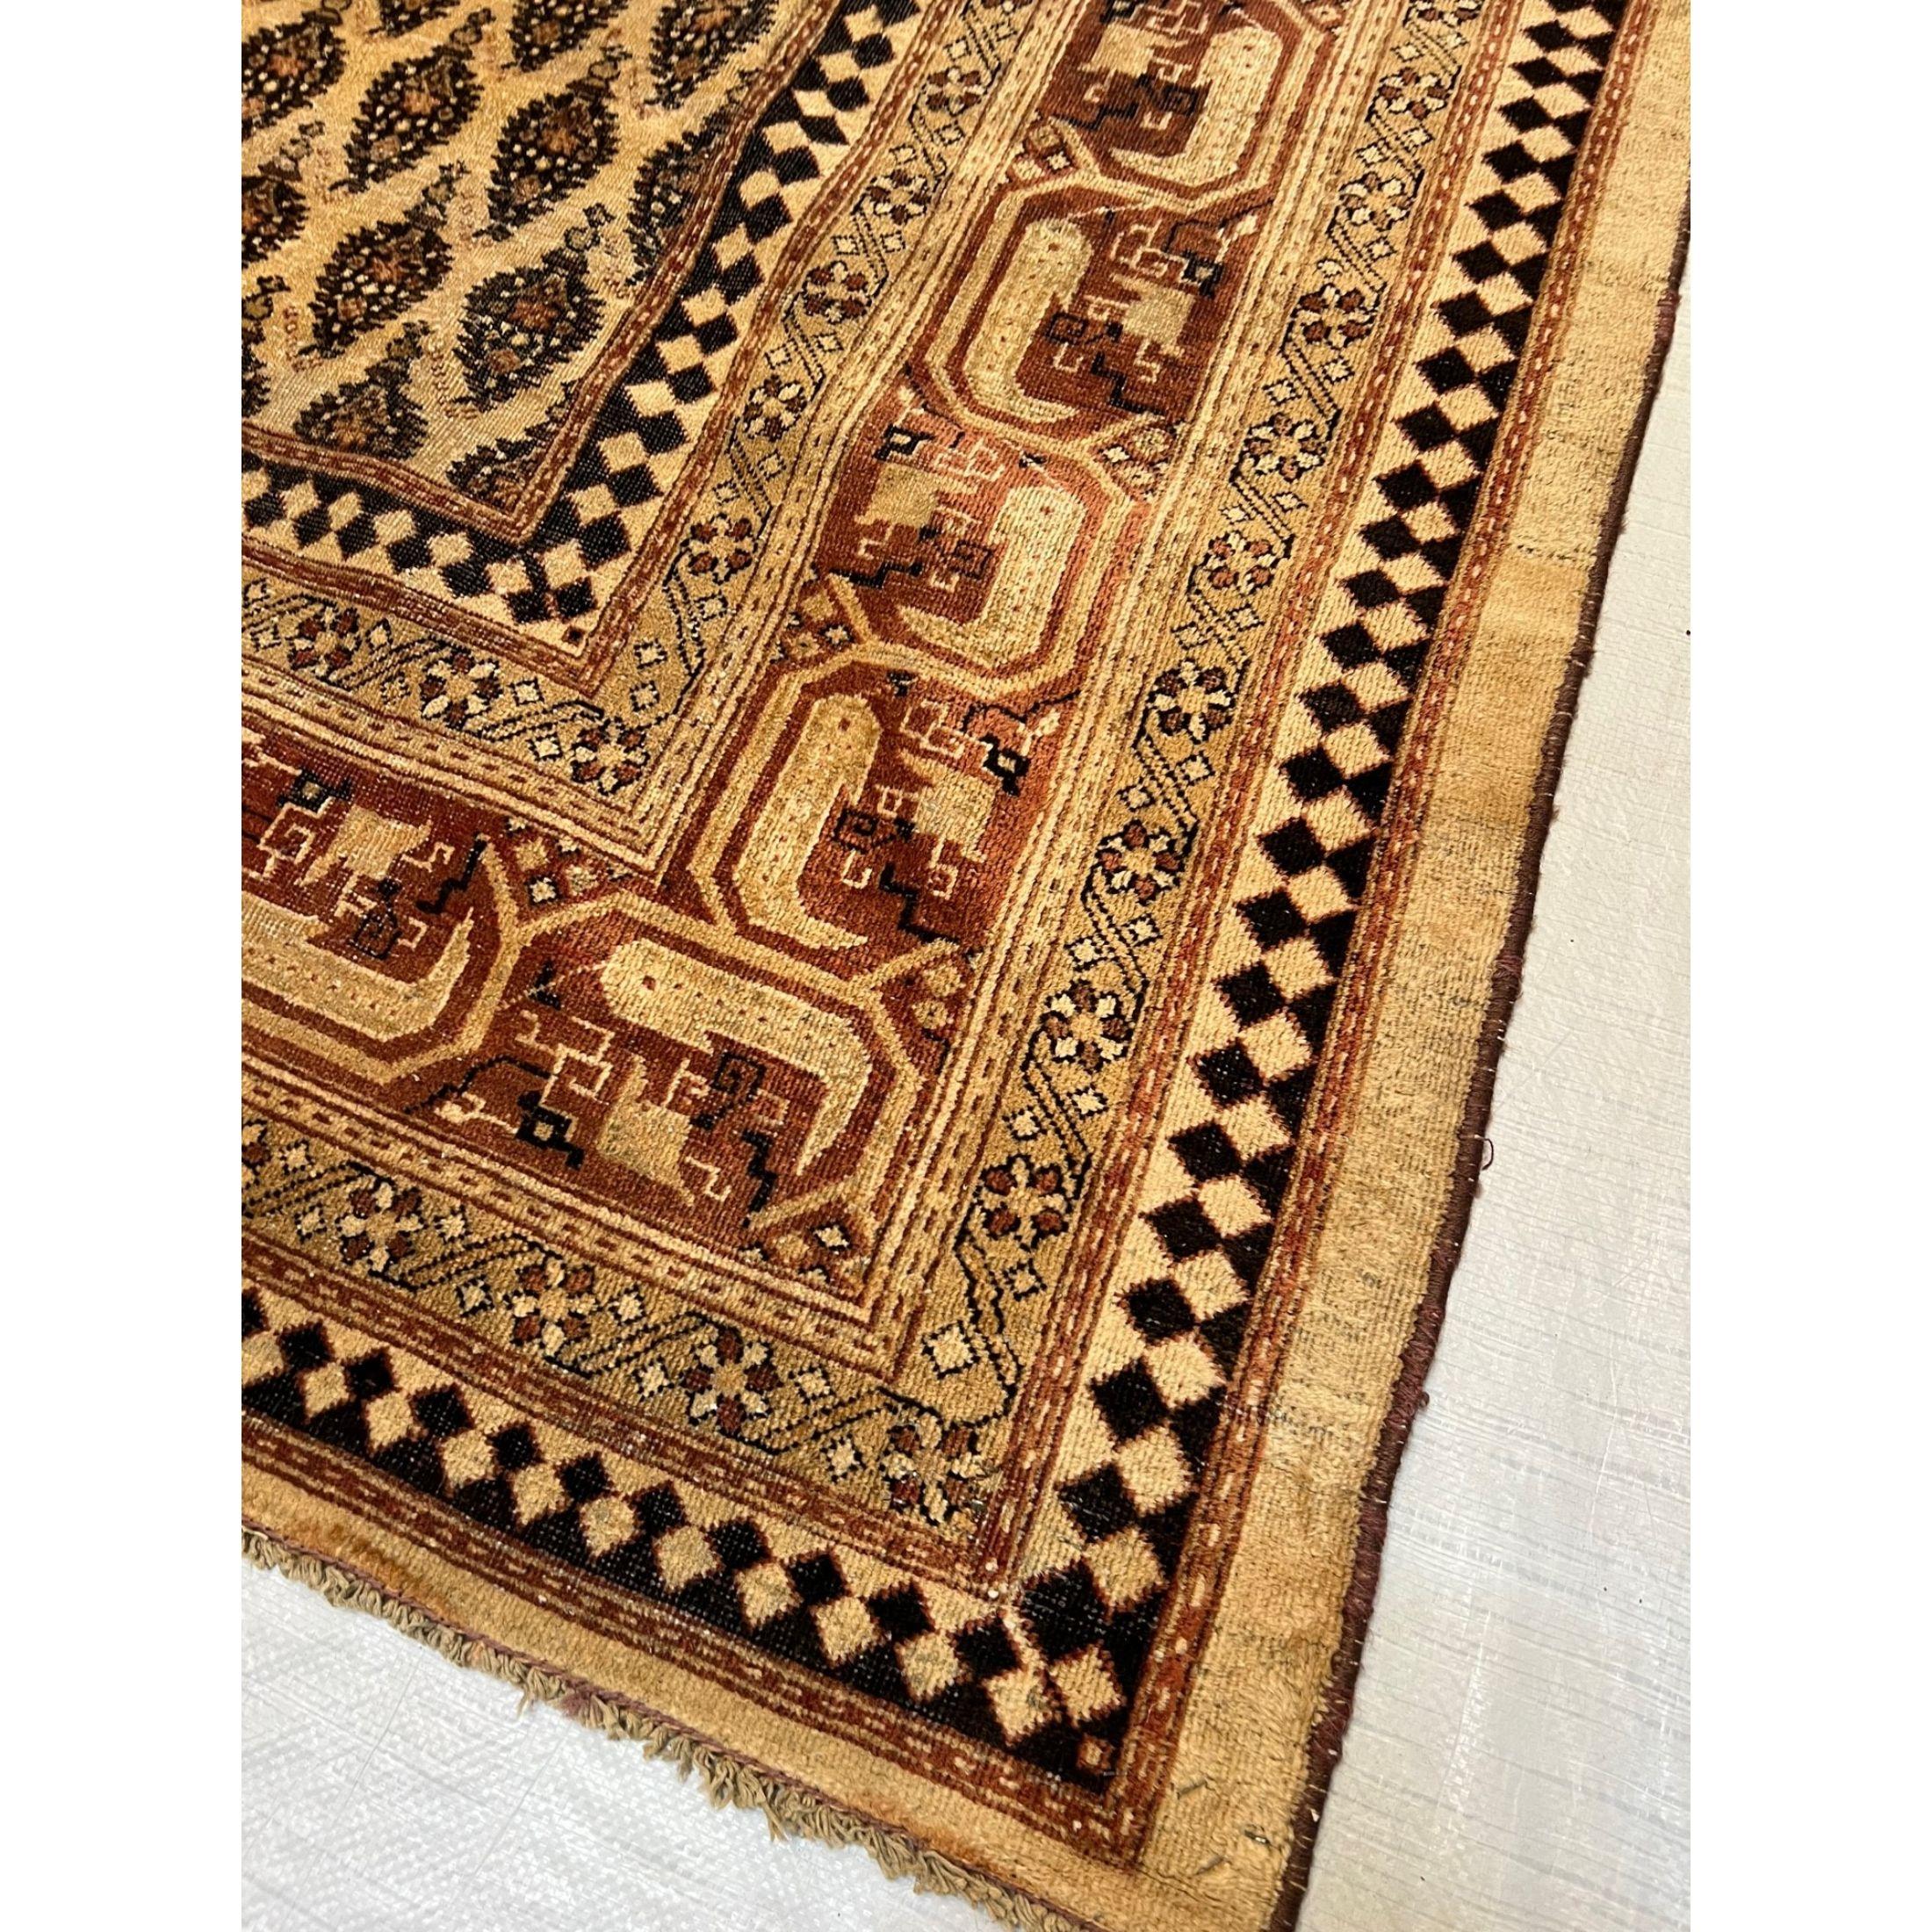 Antike Teppiche aus Amritsar - Die spektakulären Teppiche aus Amritsar fangen den exotischen Stil Indiens ein und weisen gleichzeitig einen subtilen kolonialen Einfluss auf. Diese Konvergenz östlicher und westlicher Stile führt zu einem